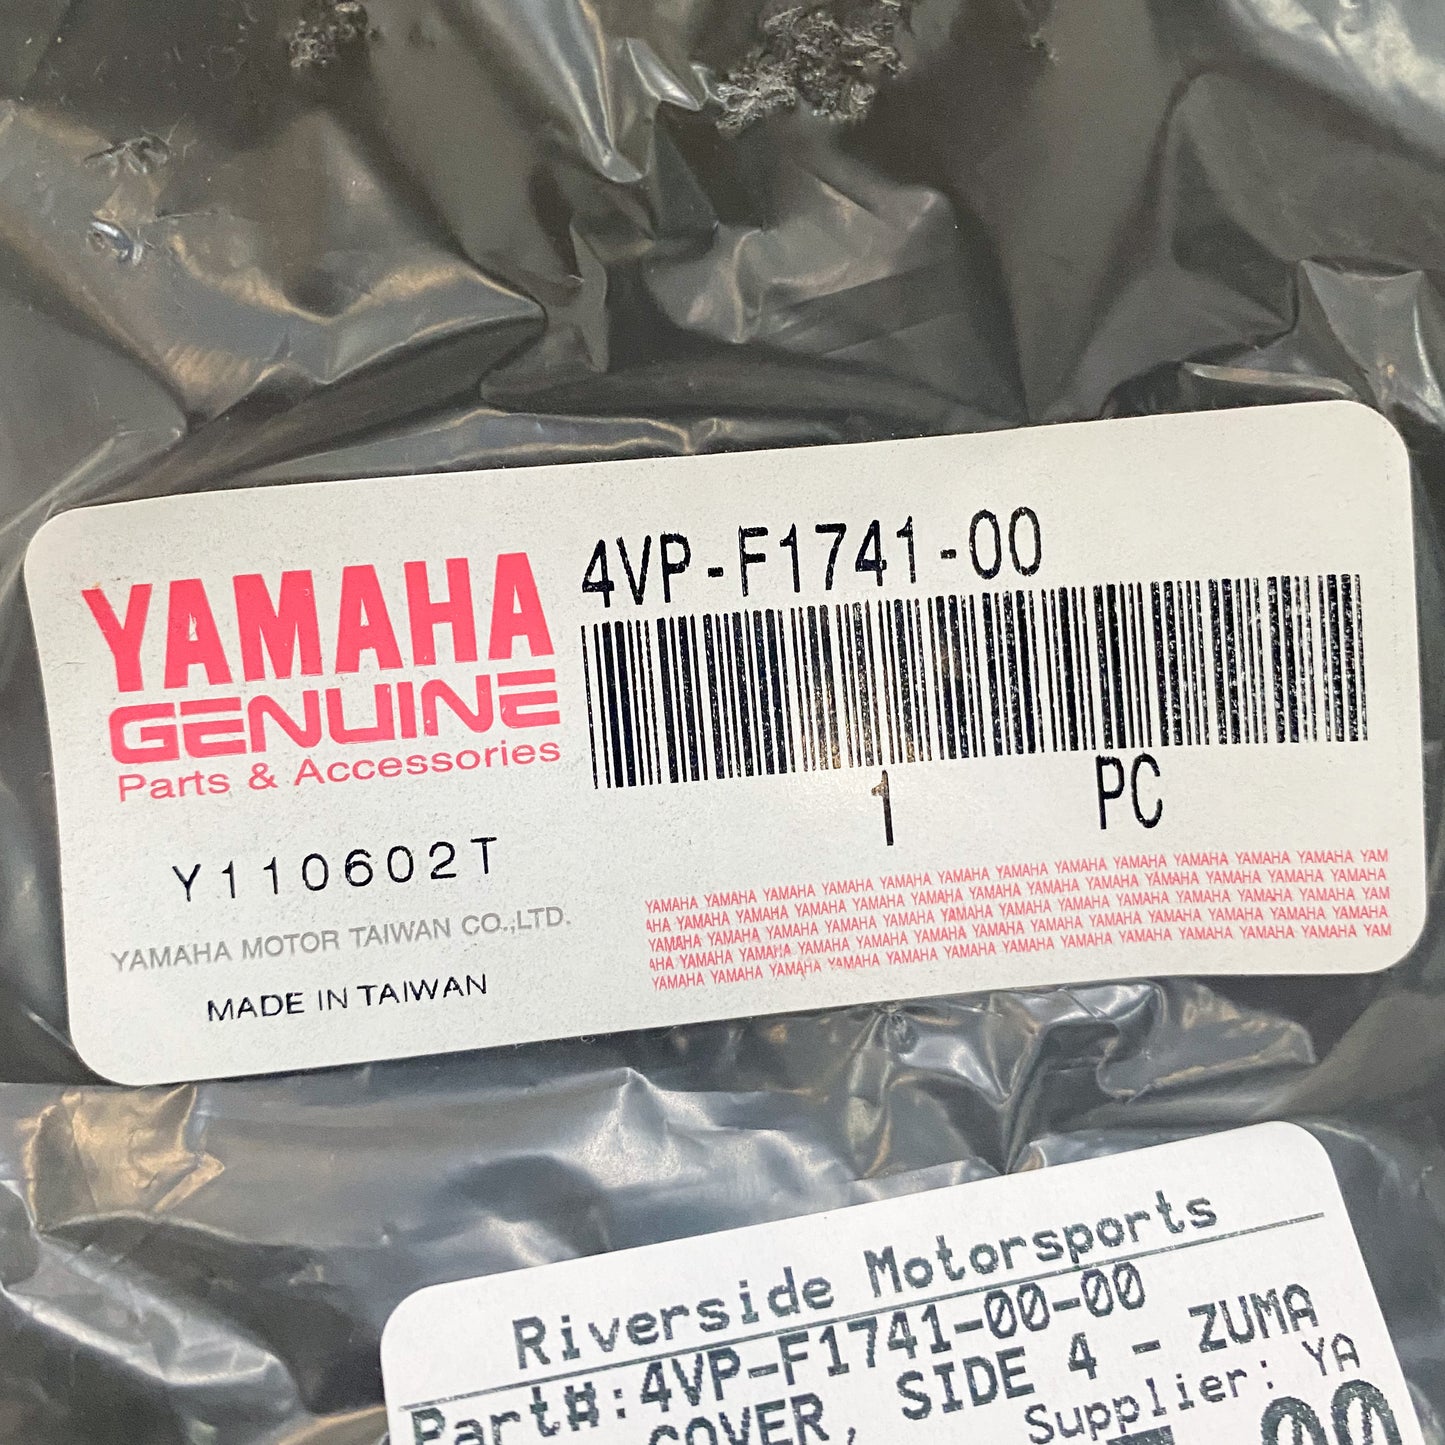 Yamaha Cover, Side 4 - Zuma  4VP-F1741-00-00